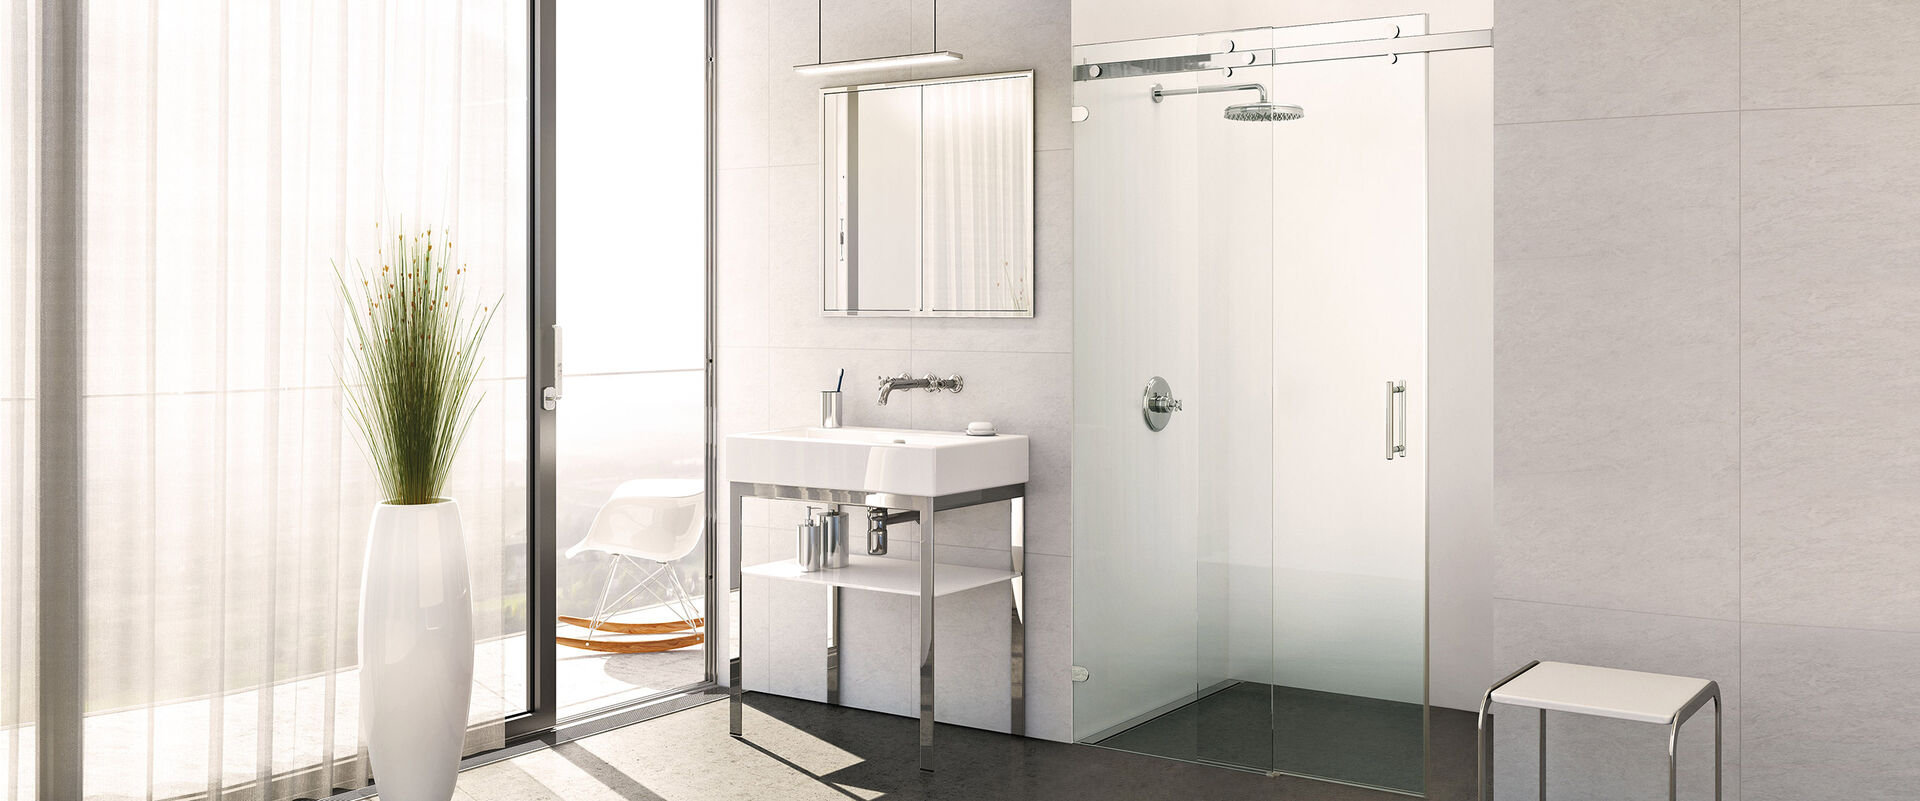 Lichtdurchflutetes Badezimmer von SPRINZ mit Fenster, Schaukelstuhl draußen, Waschtisch und einer Dusche in Nische mit Gleittüren der Serie Opalin S verschlossen.